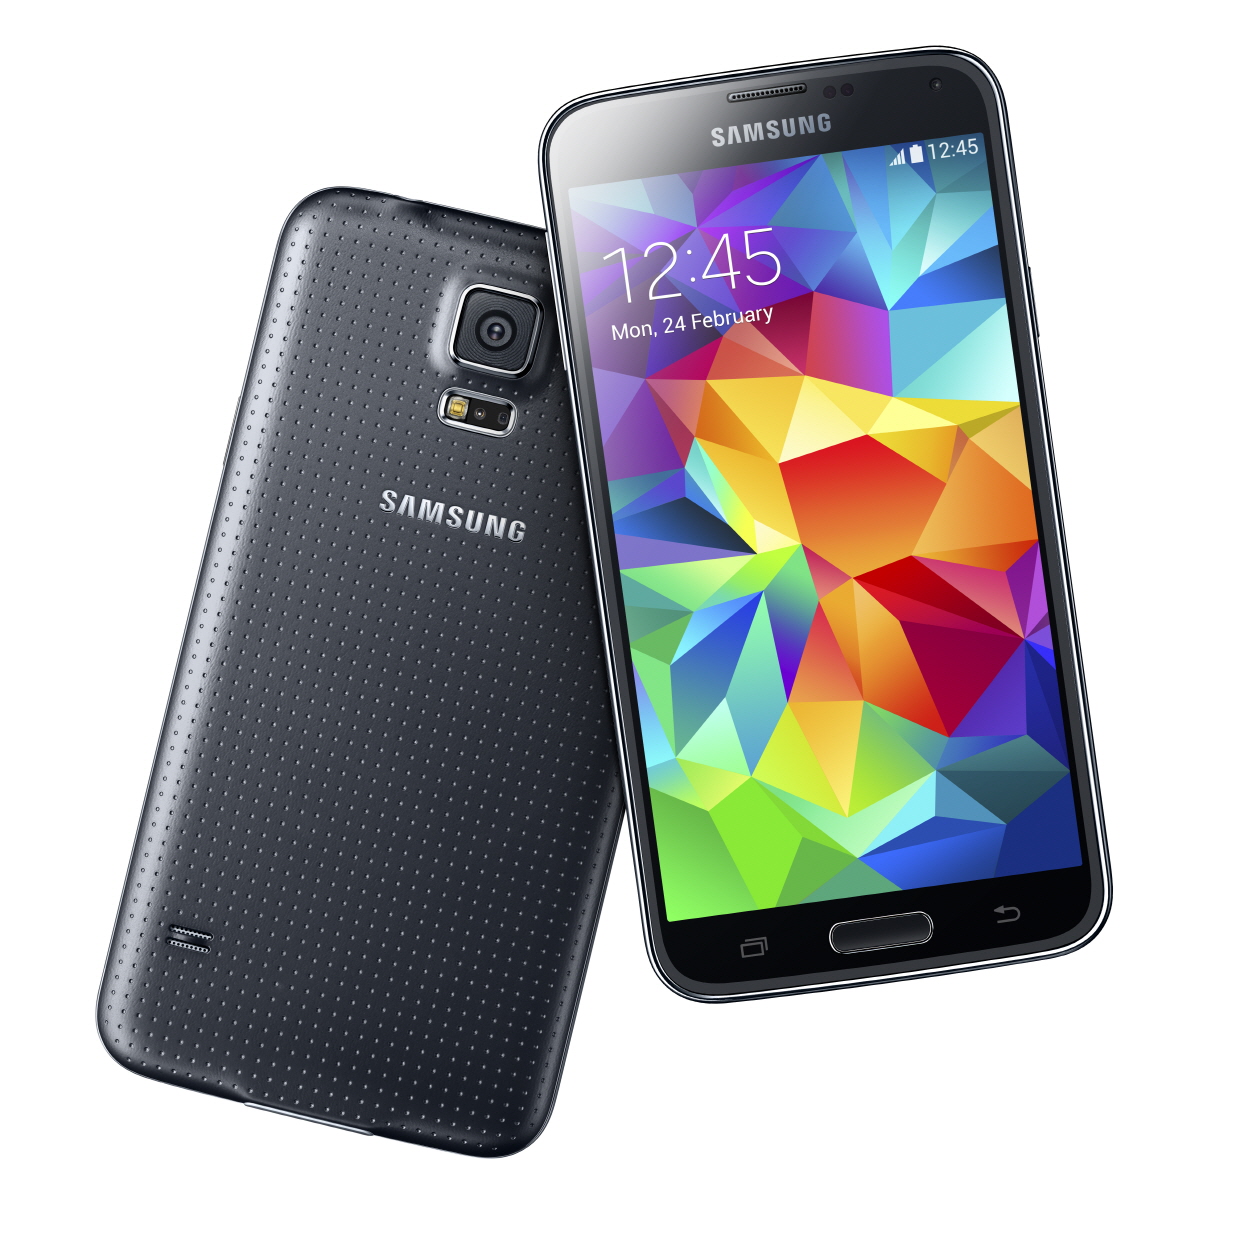 Durant des mois, de très nombreuses rumeurs ont circulé à propos du Galaxy S5. Elles se sont presque toutes révélées fausses. Seule l’introduction d’un lecteur d’empreintes digitales s’est finalement confirmée. Samsung a préféré jouer la carte de l’ergonomie en travaillant mieux l’adéquation entre les performances techniques et les fonctionnalités. © Samsung